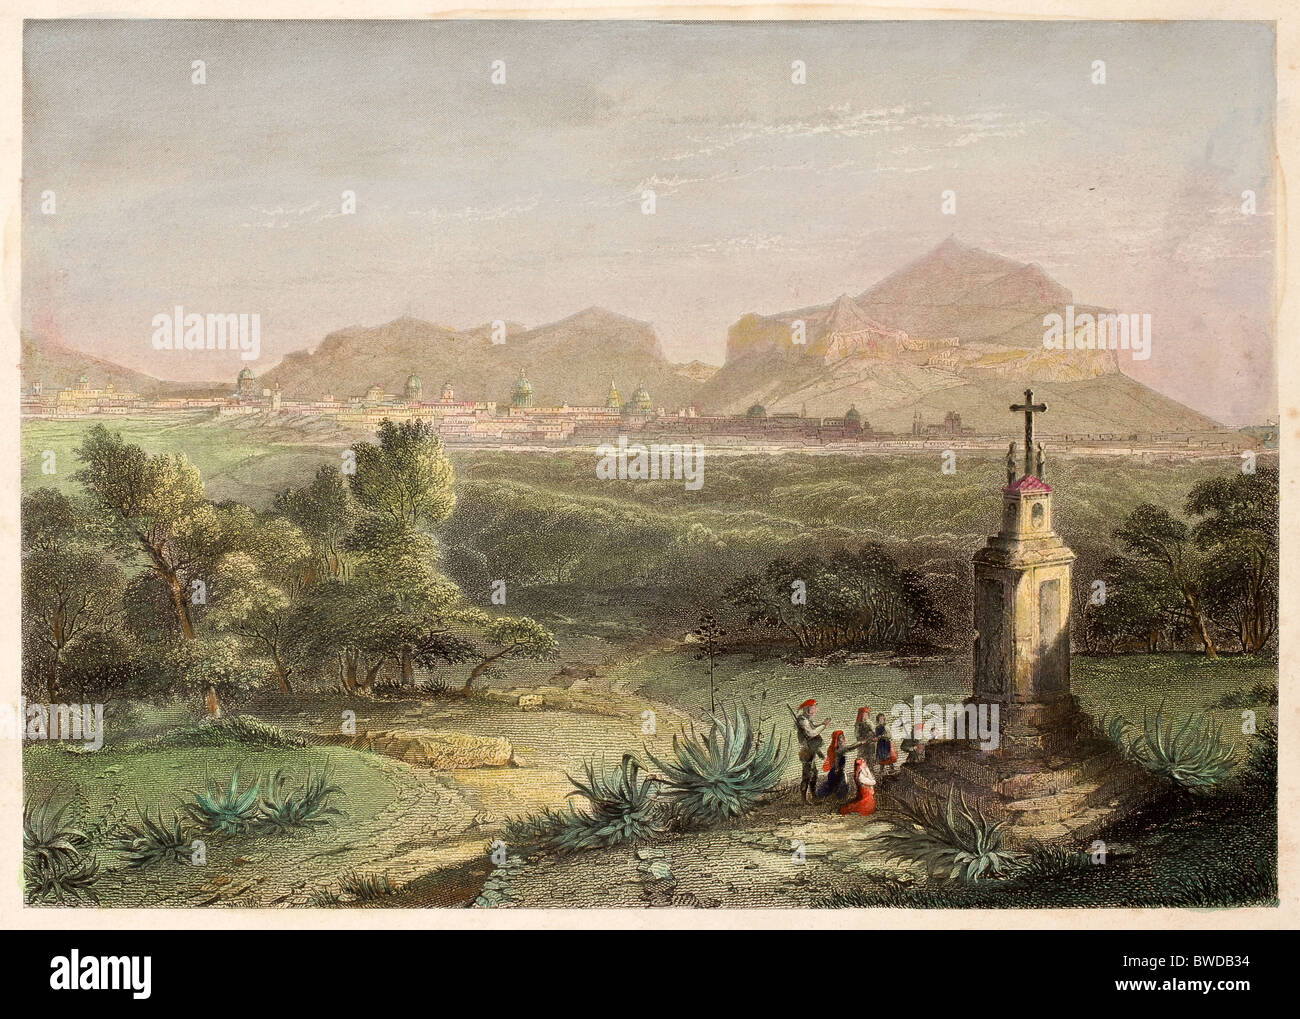 Alten Drucken, Datable aus dem 19. Jahrhundert, zeigt ein Bild von einer religiösen Denkmal in der Nähe von palermo, Italien Stockfoto